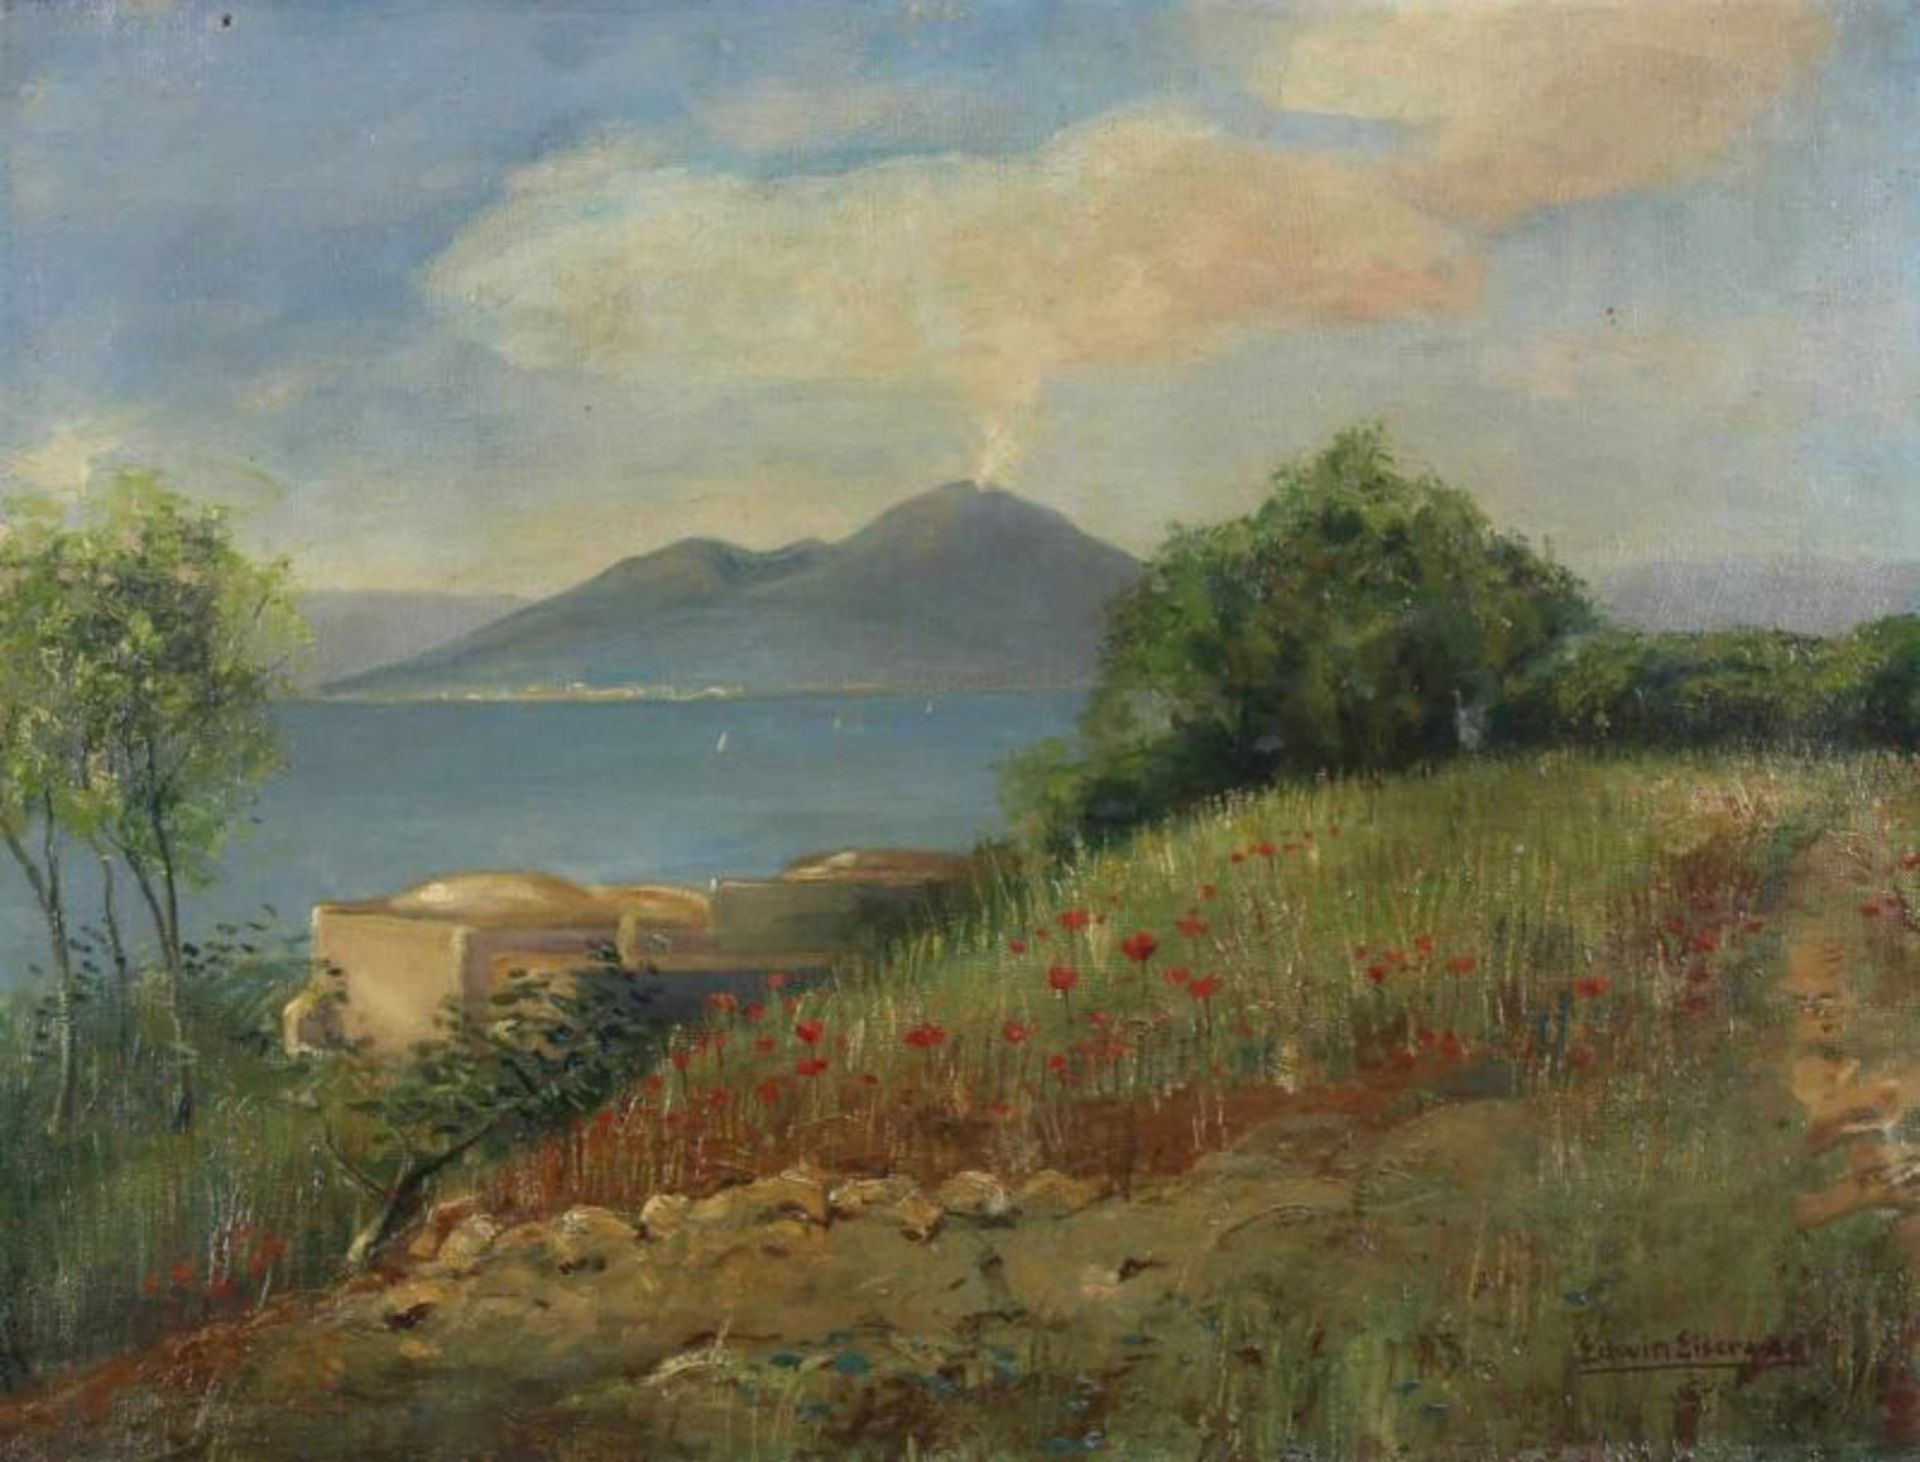 Eiserwag, Edwin (geb. 1880 Buxtehude), "Blick auf den Vesuv", Öl auf Leinwand, signiert unten rechts